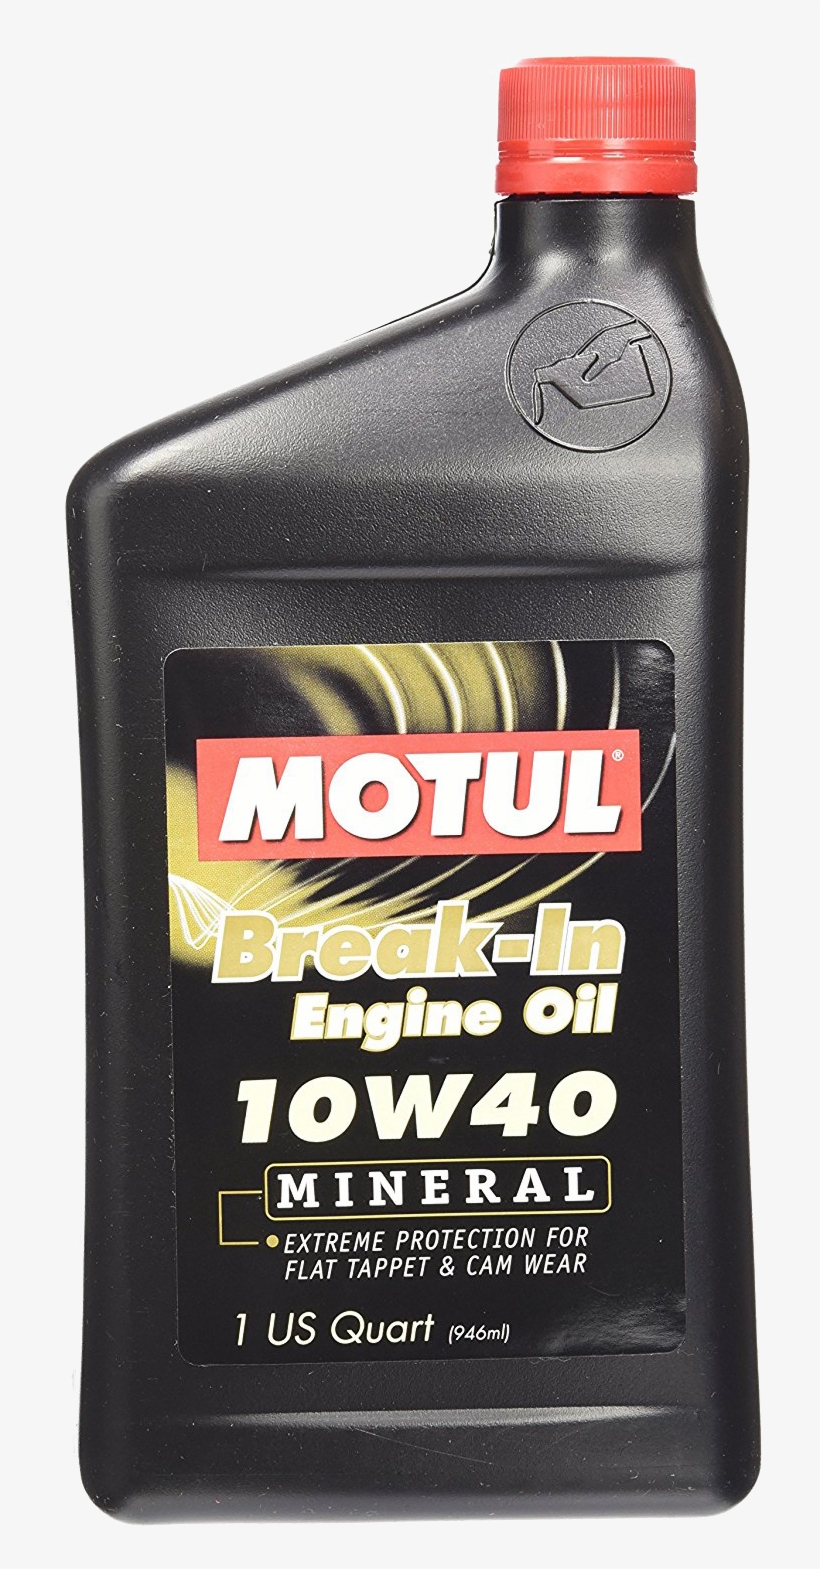 Motul Break-in Engine Oil 10w40 - Motul Break In Oil, transparent png #6045885